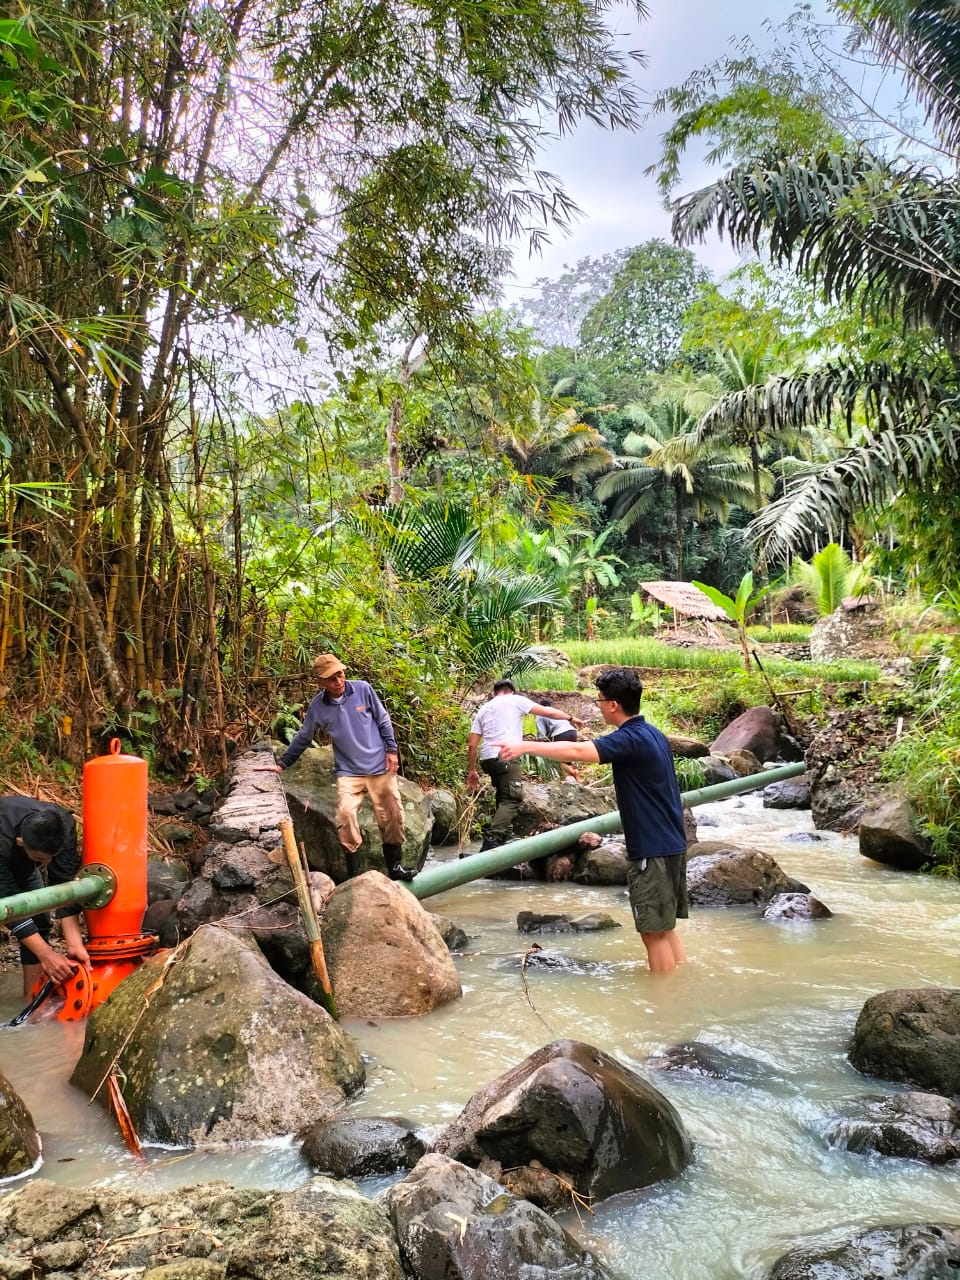 Pemanfaatan Dan Distribusi Air Sungai Untuk Kebutuhan Air di Kampung Bojong Sirna, Desa Simpang, Kecamatan Cibalong, Garut Selatan